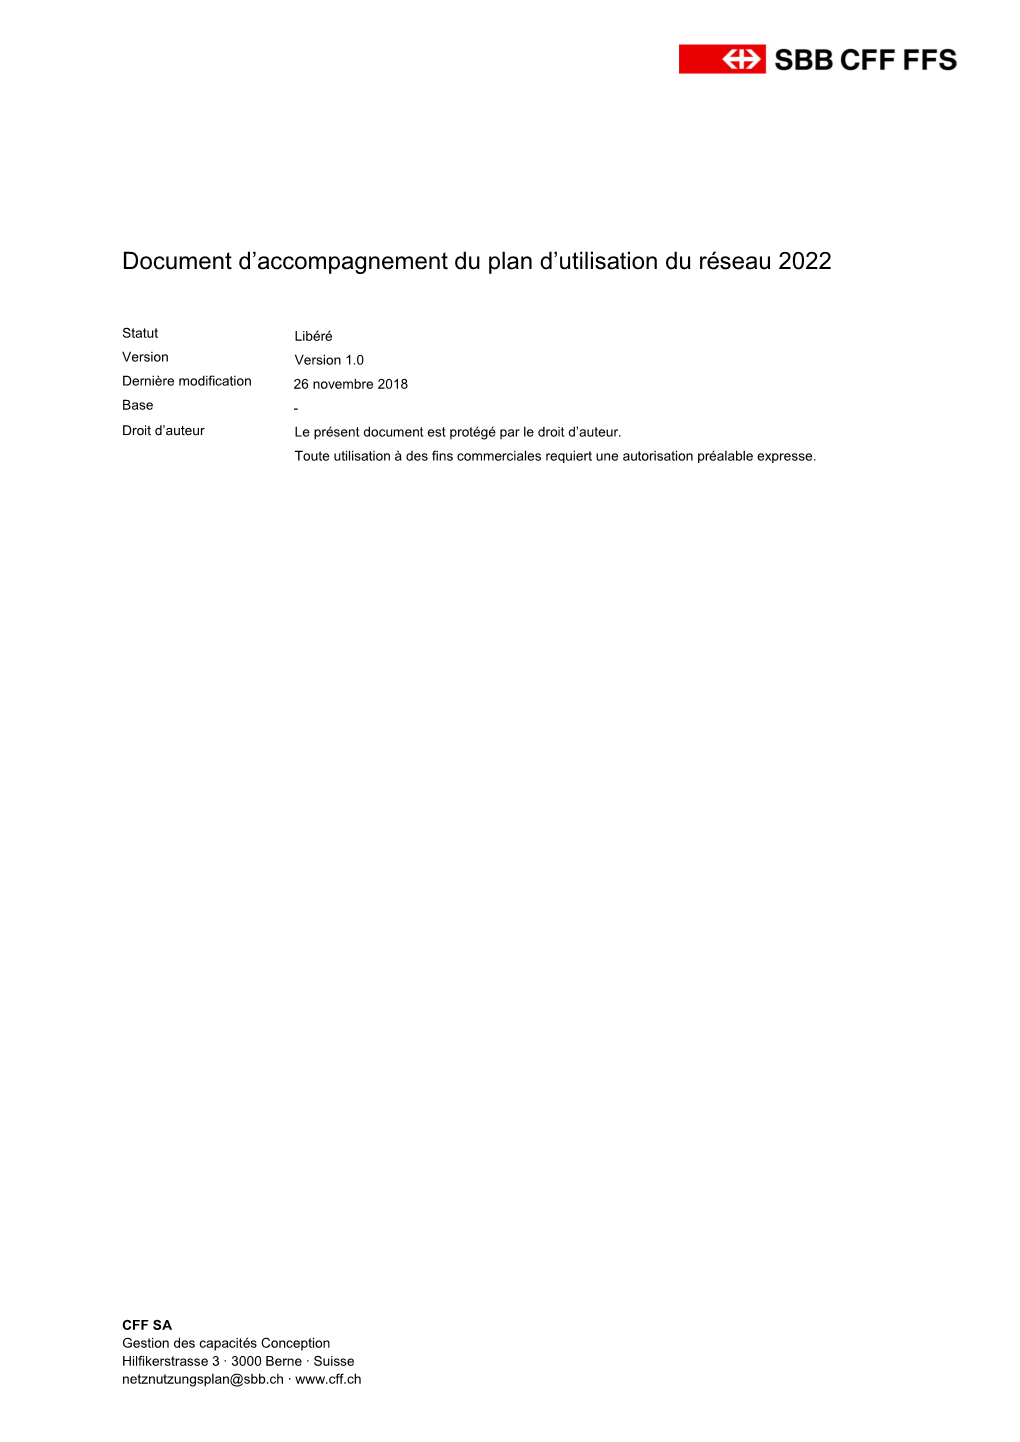 Document D'accompagnement Du Plan D'utilisation Du Réseau 2022